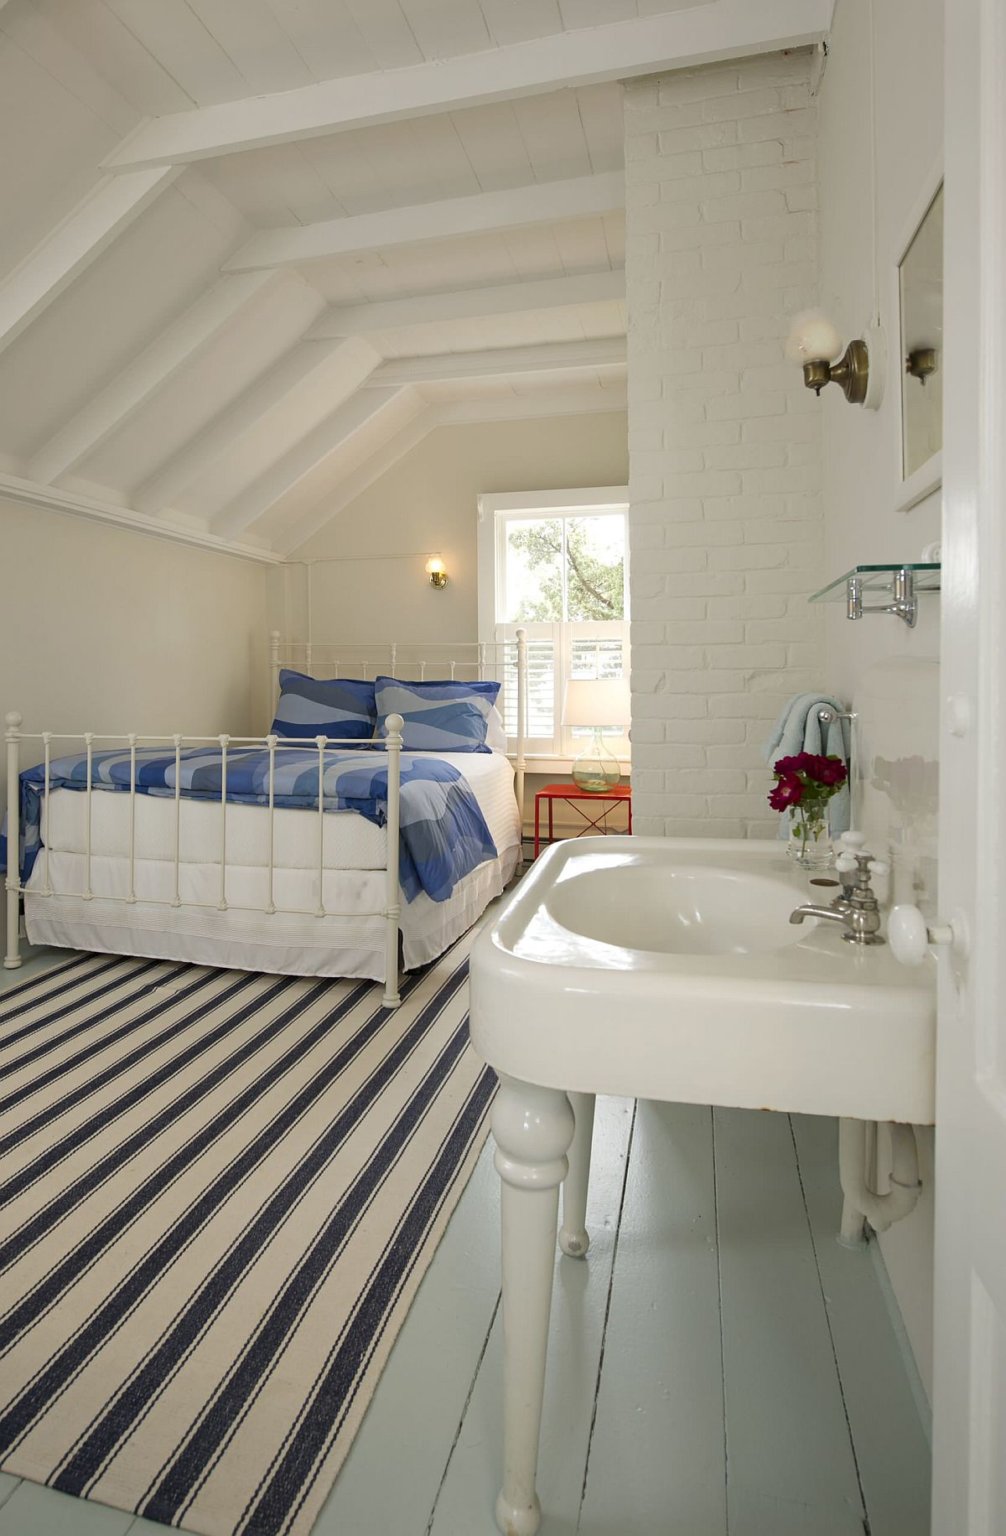 hình ảnh phòng ngủ phong cách bãi biển thanh lịch với sàn nhà sơn màu xanh nhạt, thảm trải kẻ sọc